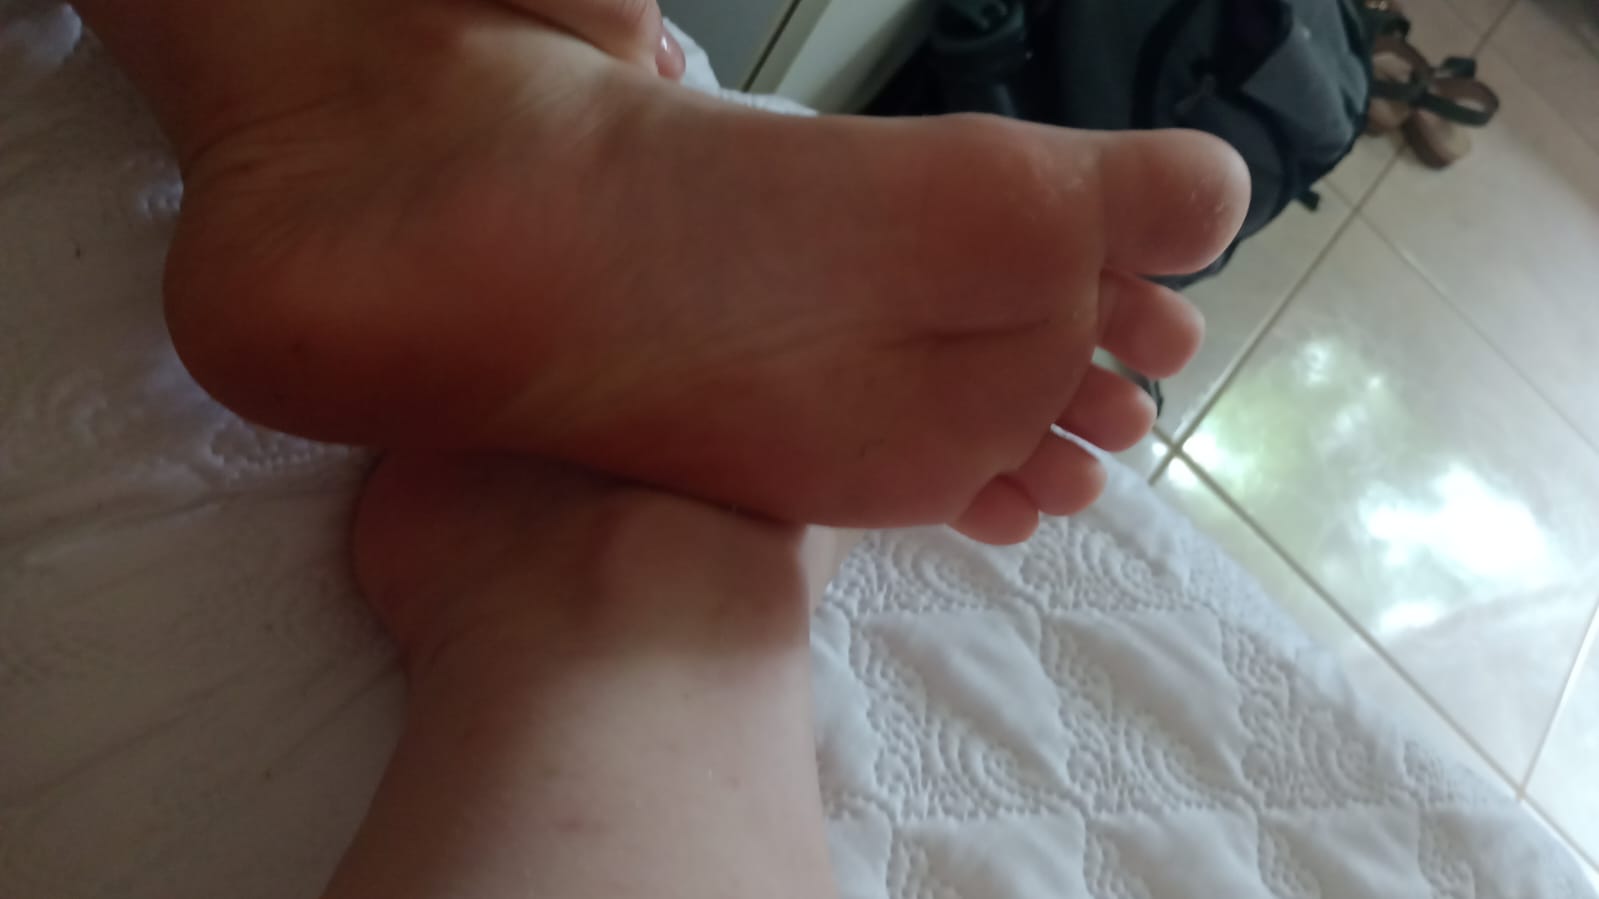 My stinky feet